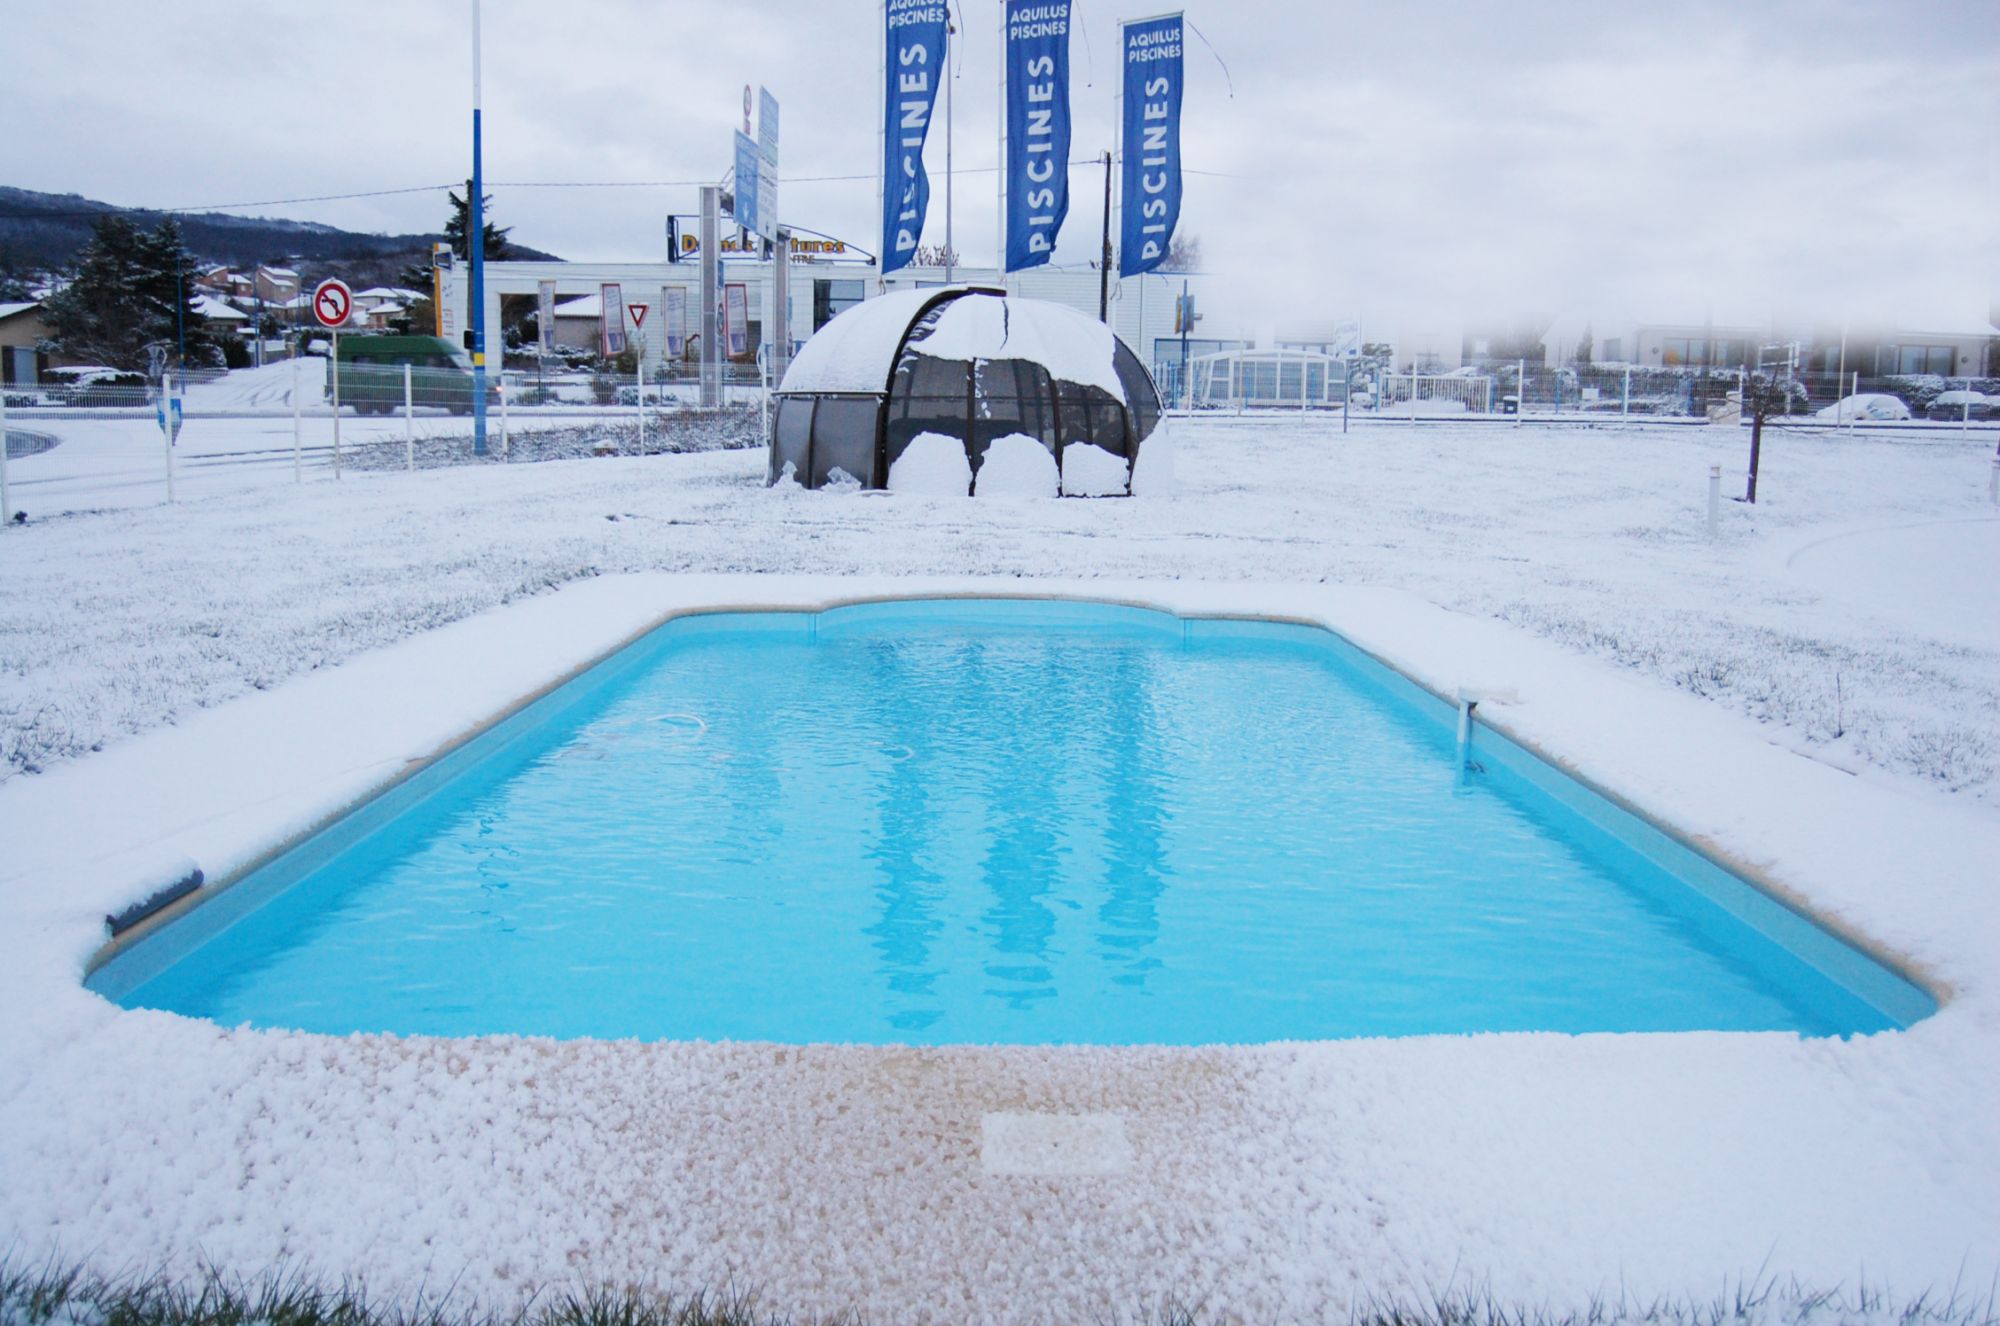 Hivernage passif piscine : la solution pour les hivers froids